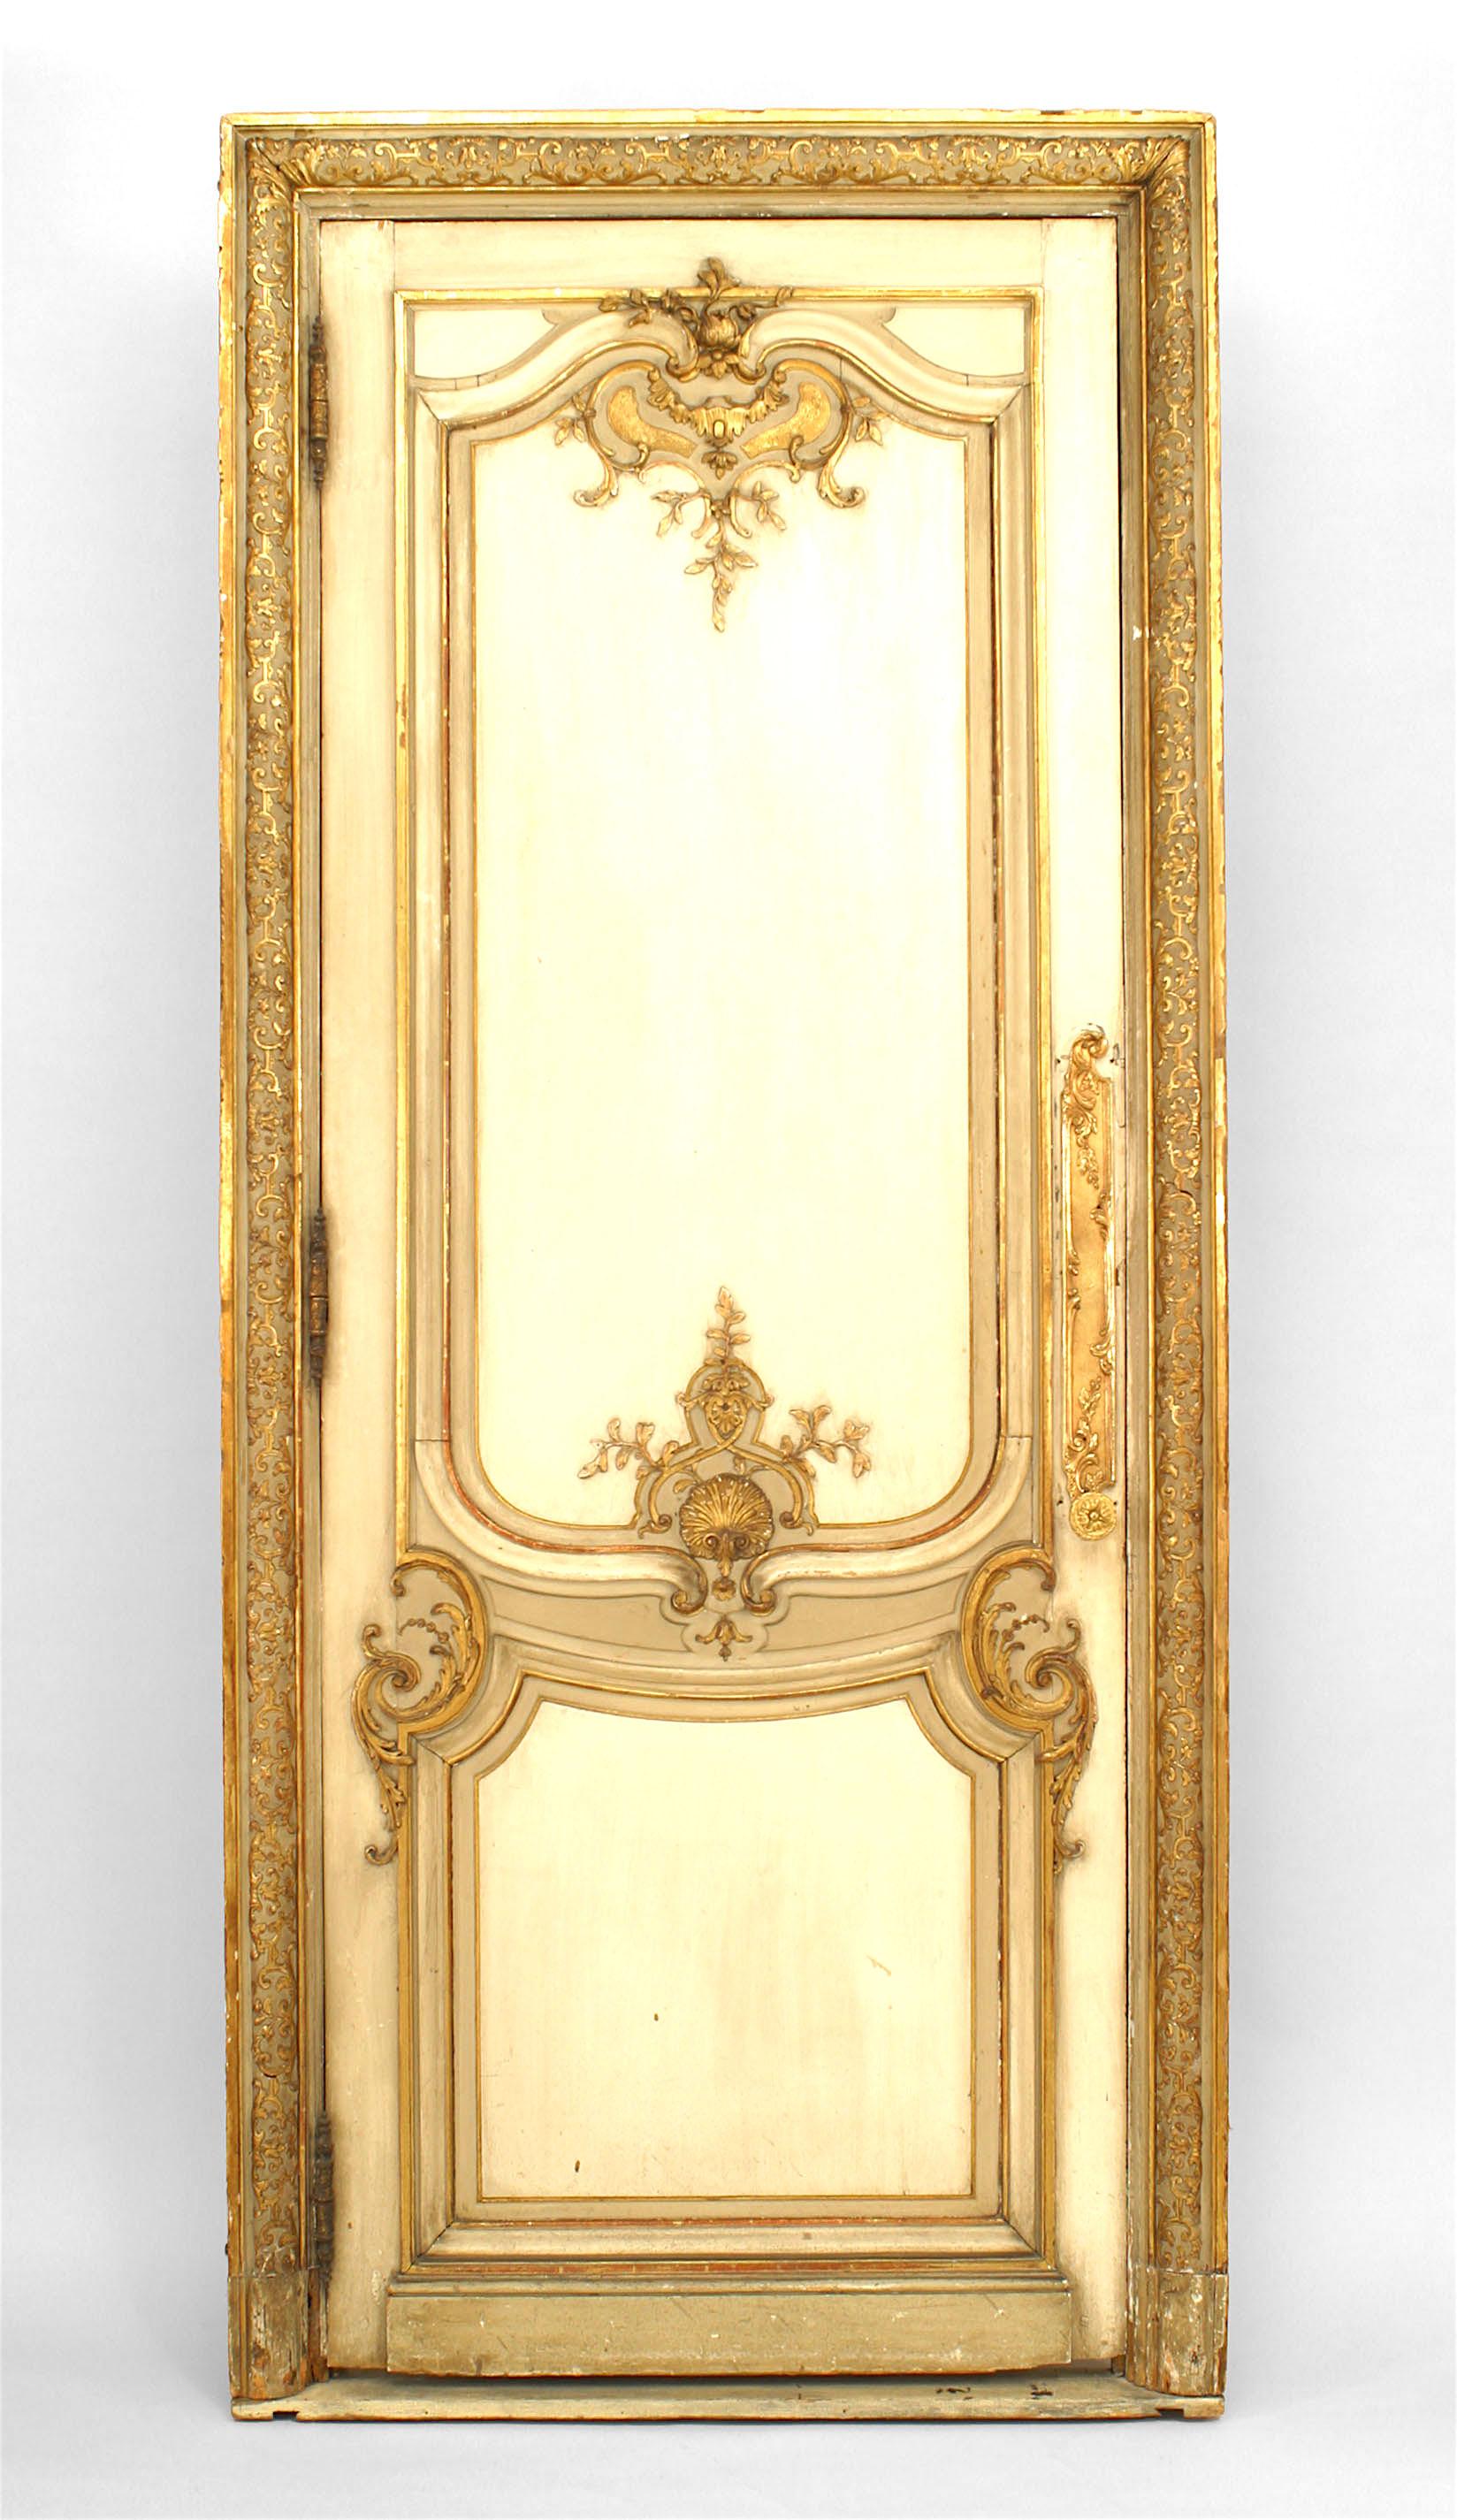 Paire de portes de style Louis XV (19ème siècle) peintes en blanc et or et sculptées dans un cadre (PRIX POUR LA PAIRE).
